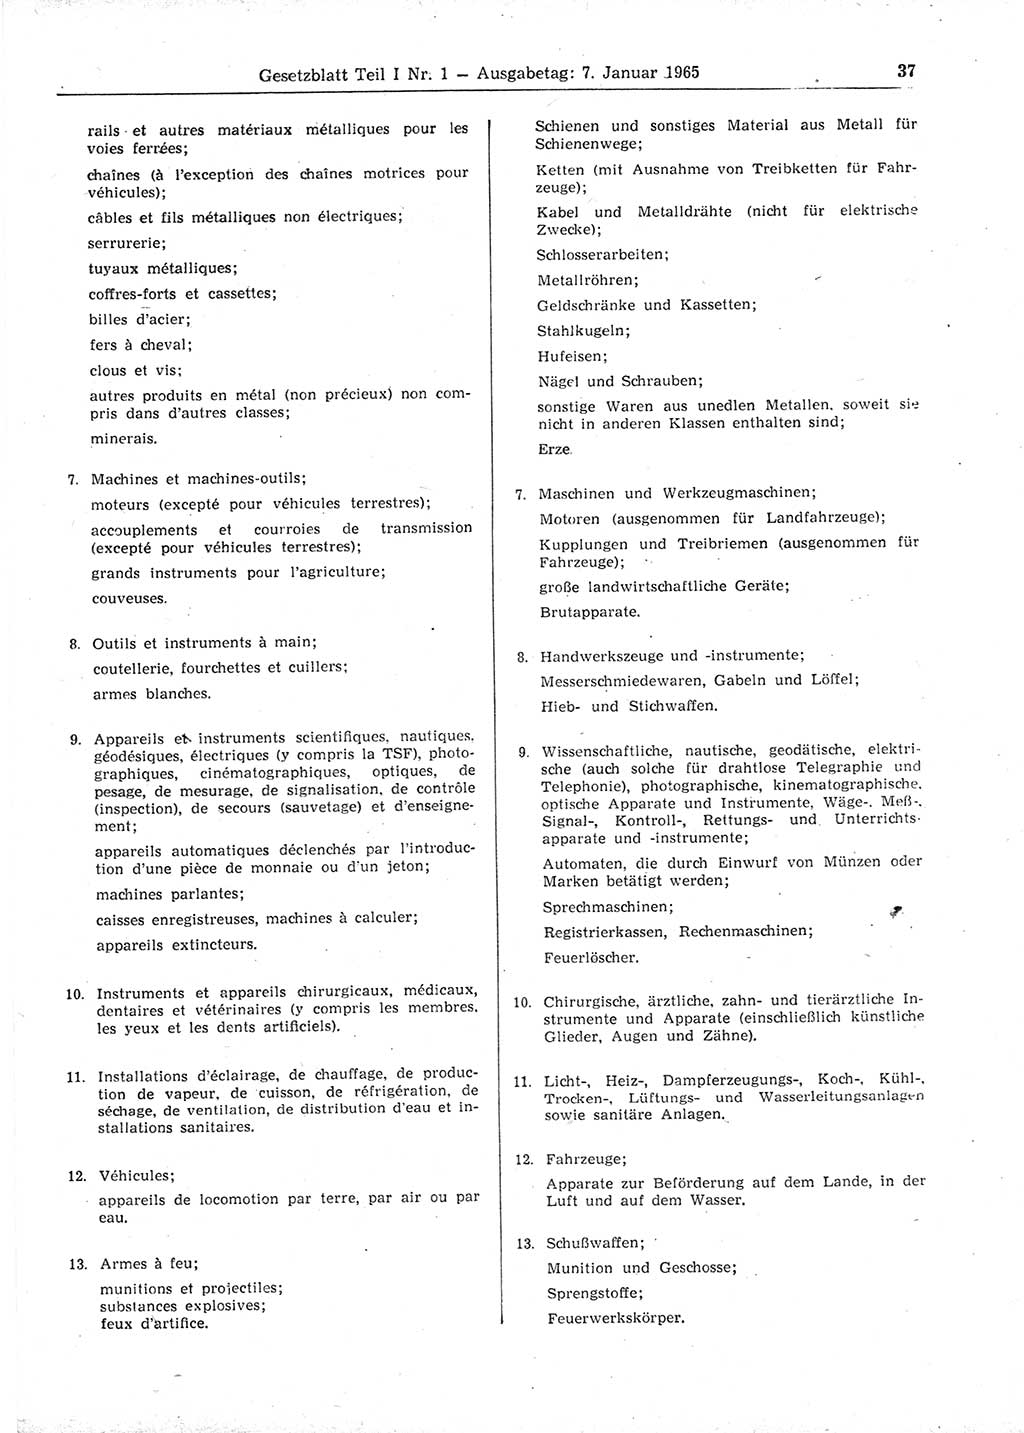 Gesetzblatt (GBl.) der Deutschen Demokratischen Republik (DDR) Teil Ⅰ 1965, Seite 37 (GBl. DDR Ⅰ 1965, S. 37)